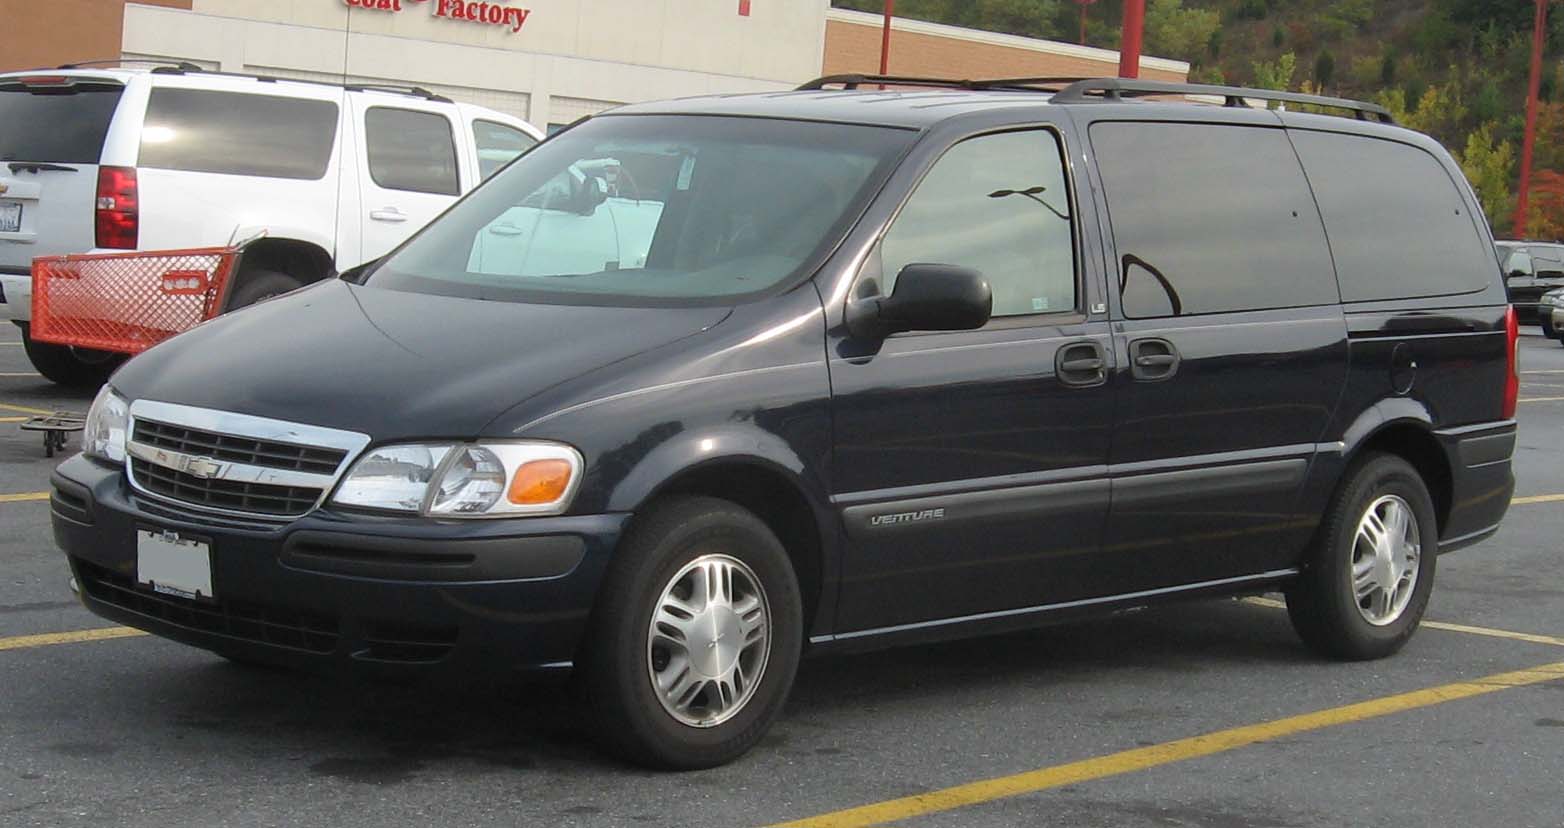 Chevrolet Venture - Wikipedia